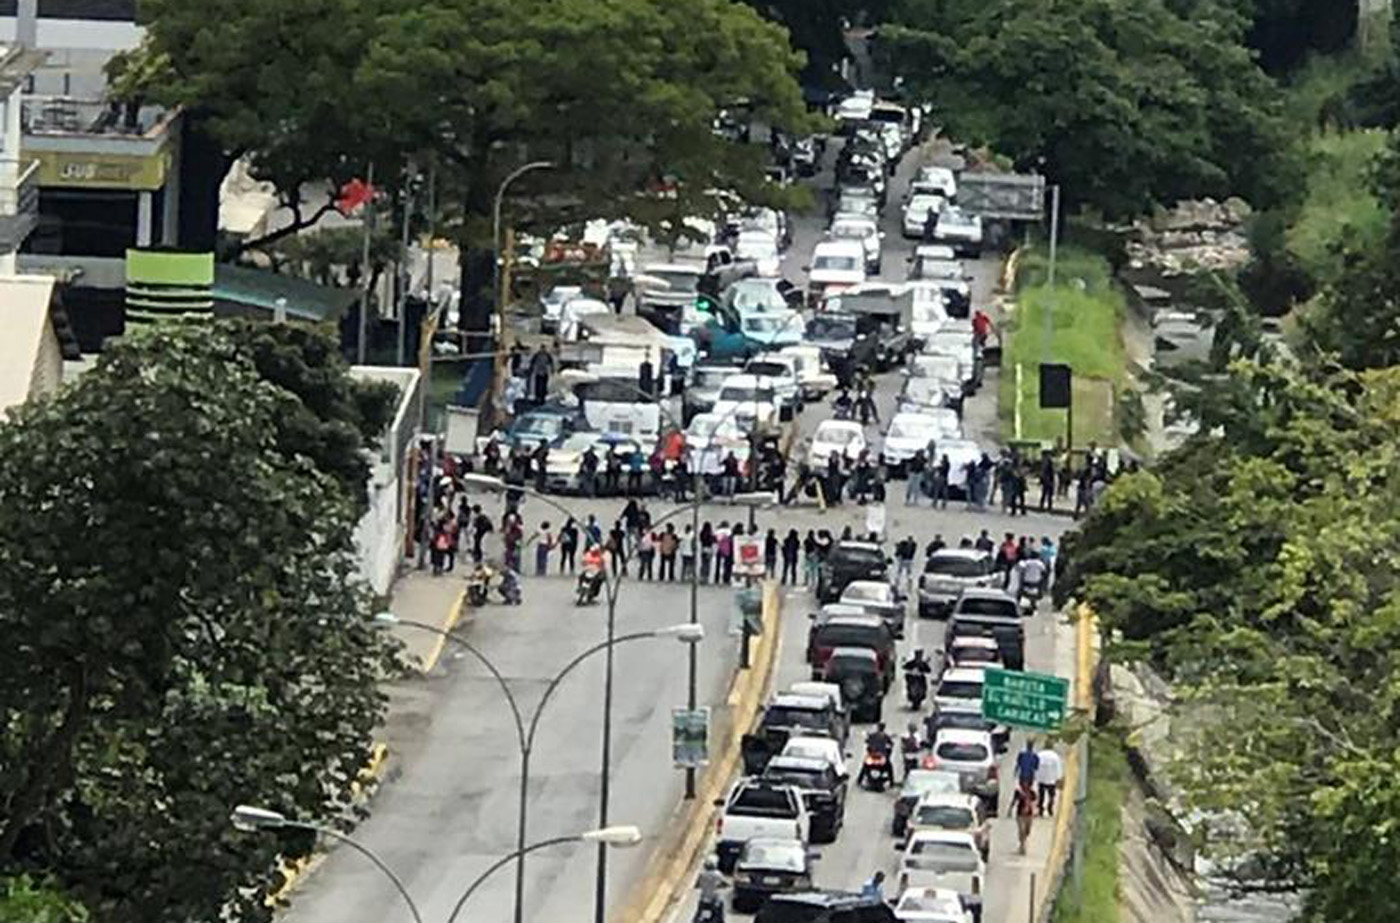 Restringido el paso vehicular en La Trinidad por protesta #2Oct